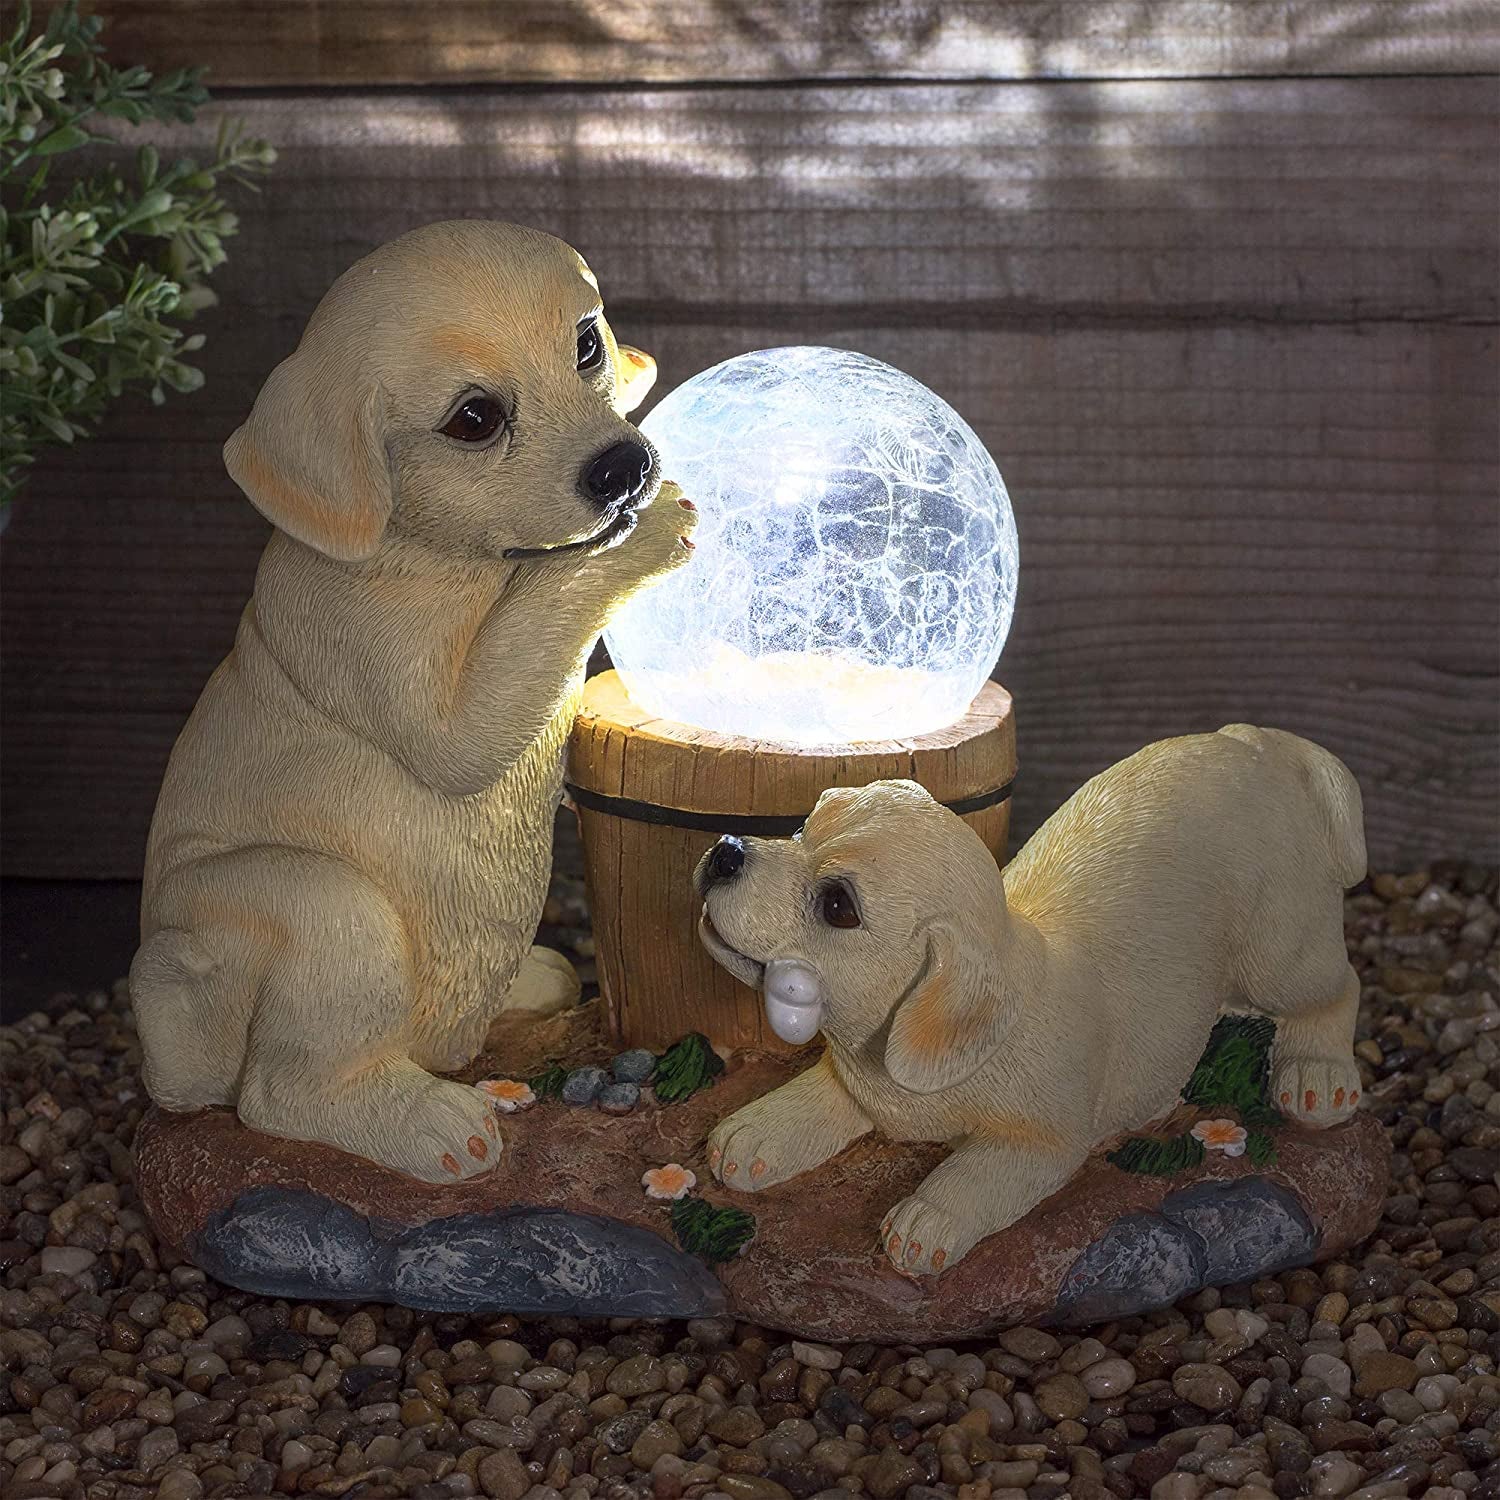 Solar Labrador Dogs Garden Ornaments | Solar Ornaments | Solar Powered Crackle Ball Light | Garden Decorations Solar Animal | Labrador Ornaments Garden Décor